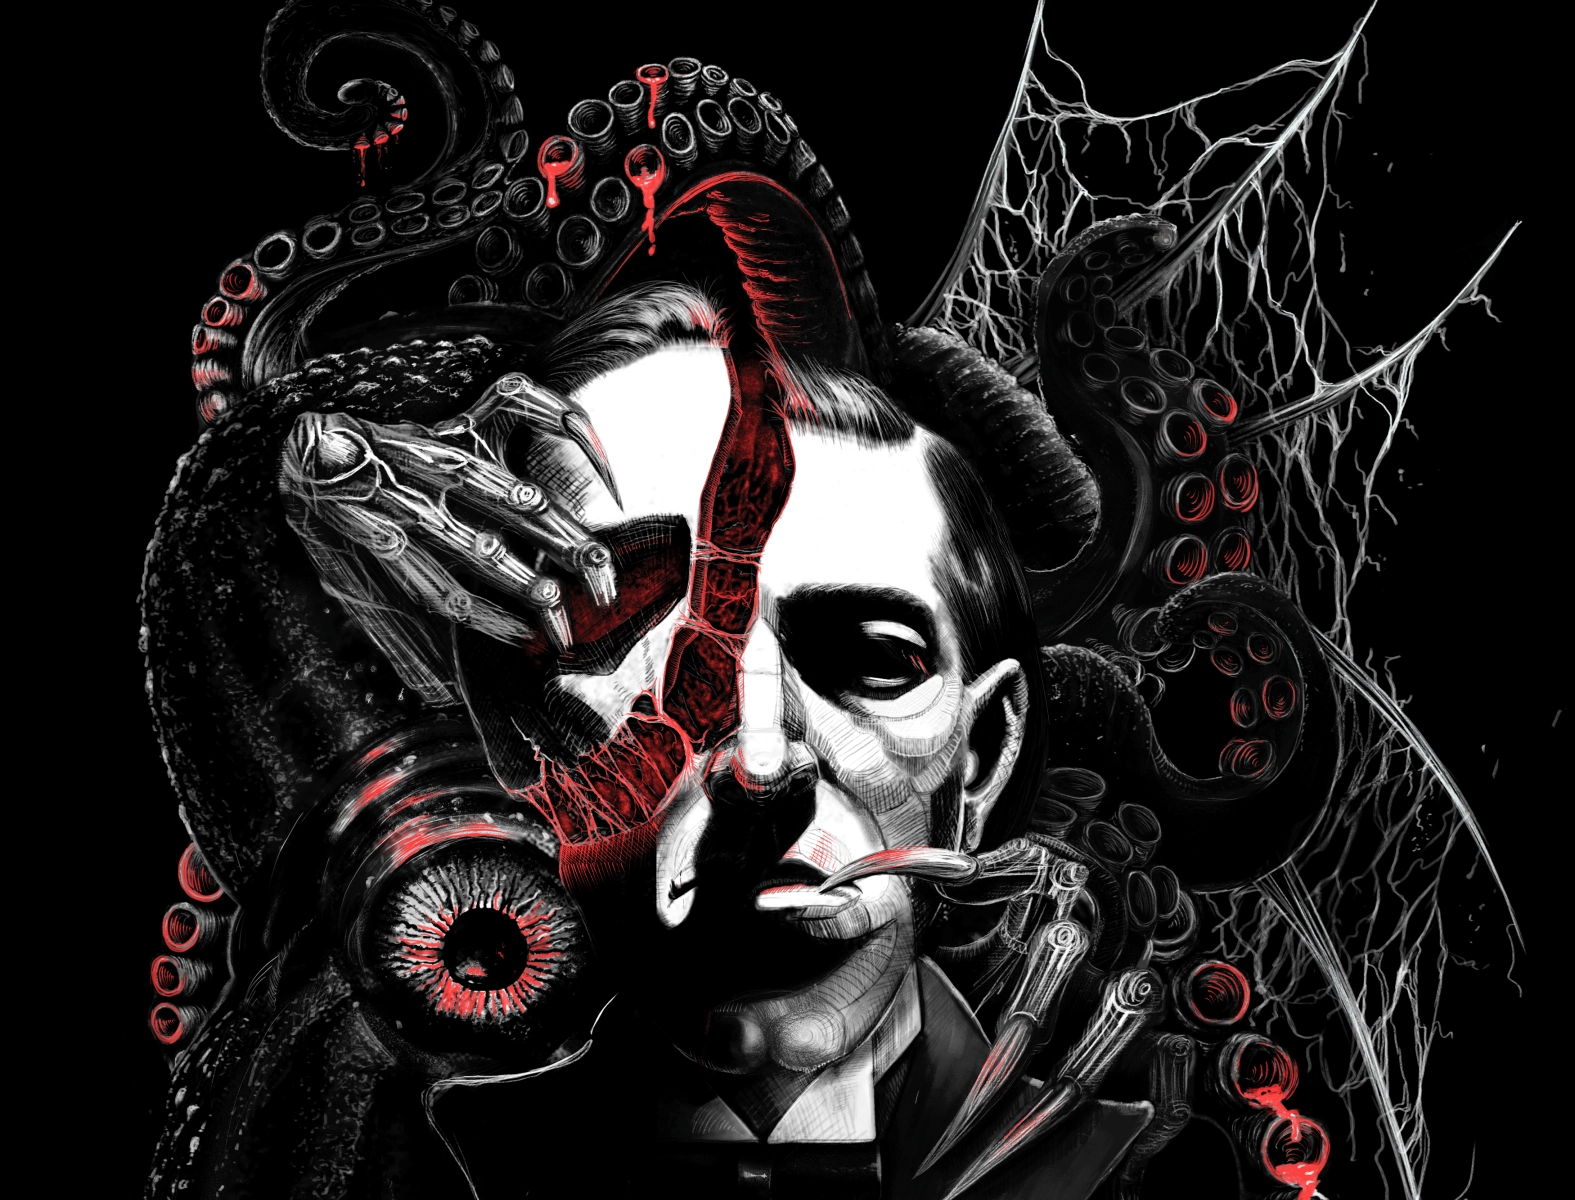 Les récits méconnus de H.P Lovecraft : la sélection Syfantasy ! (Partie 1)